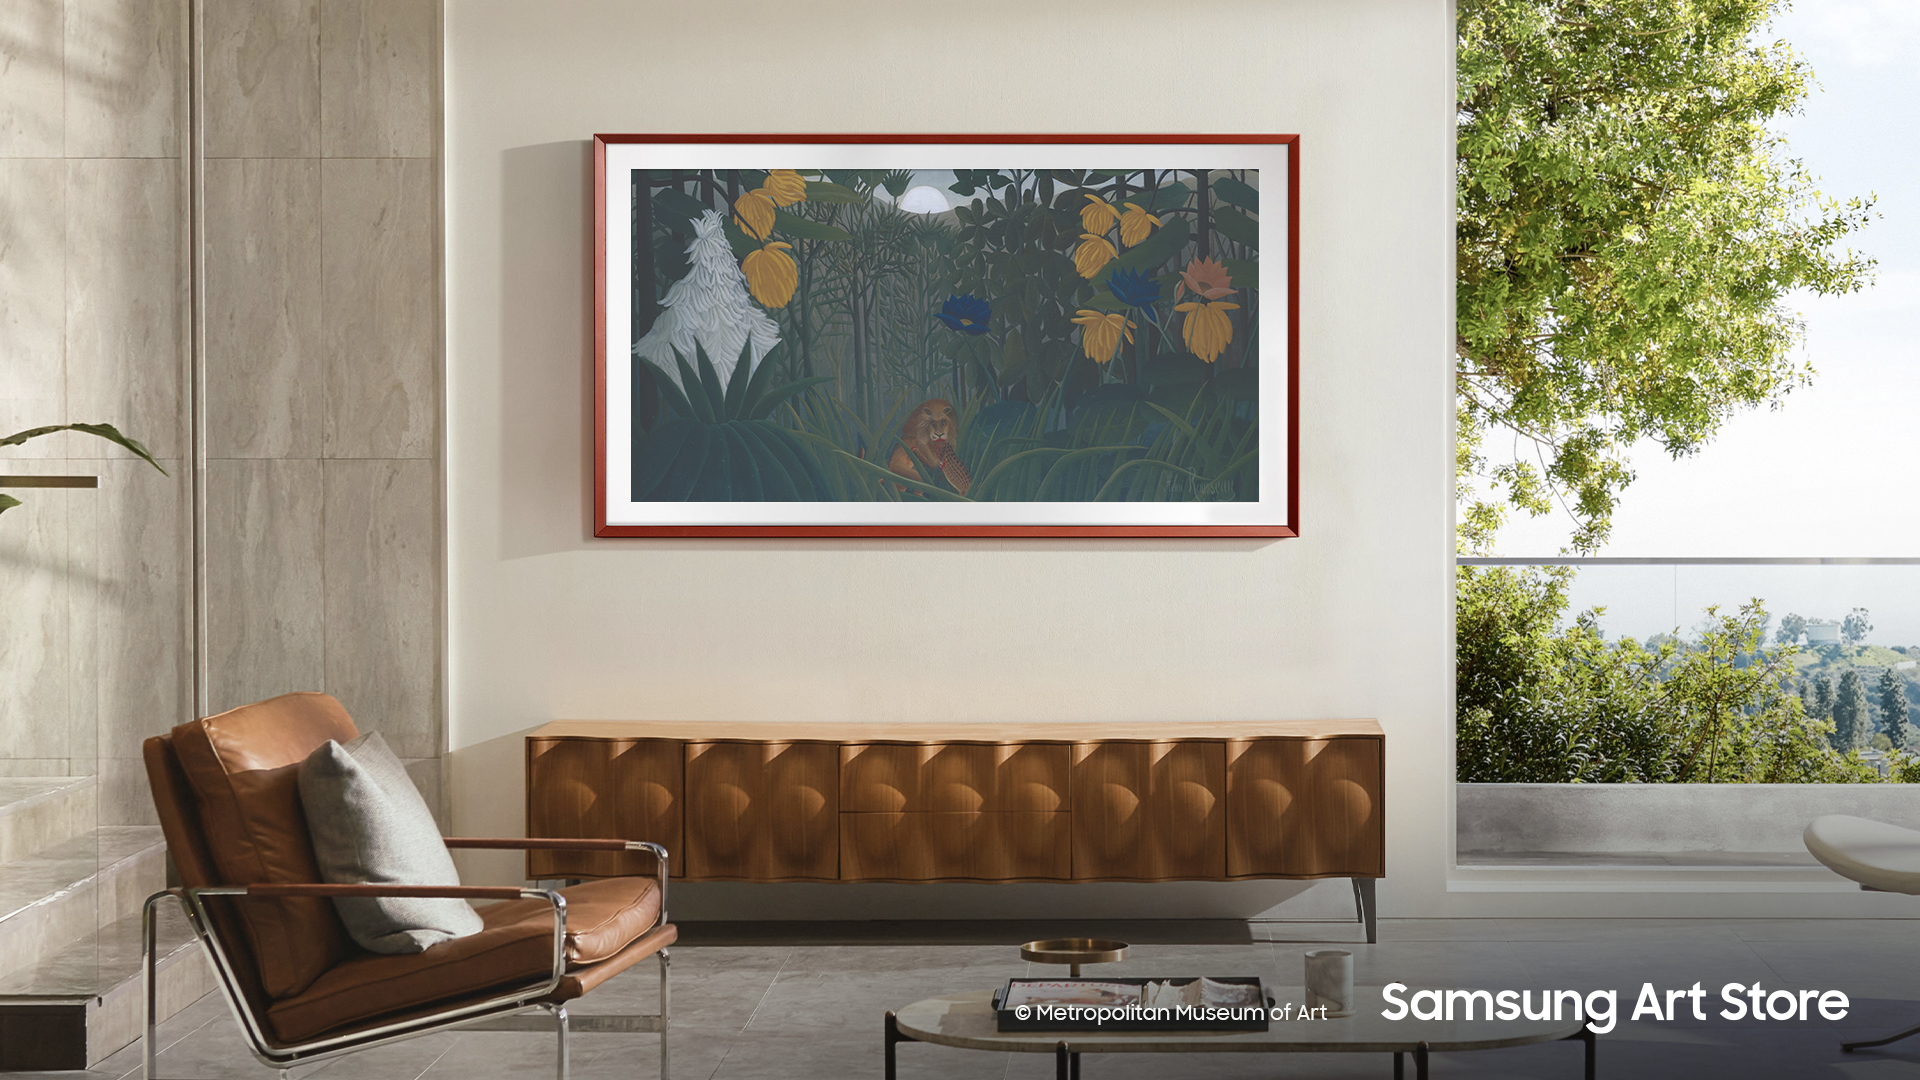 Samsung The Frame opdateret med kunstværker fra “The Met”